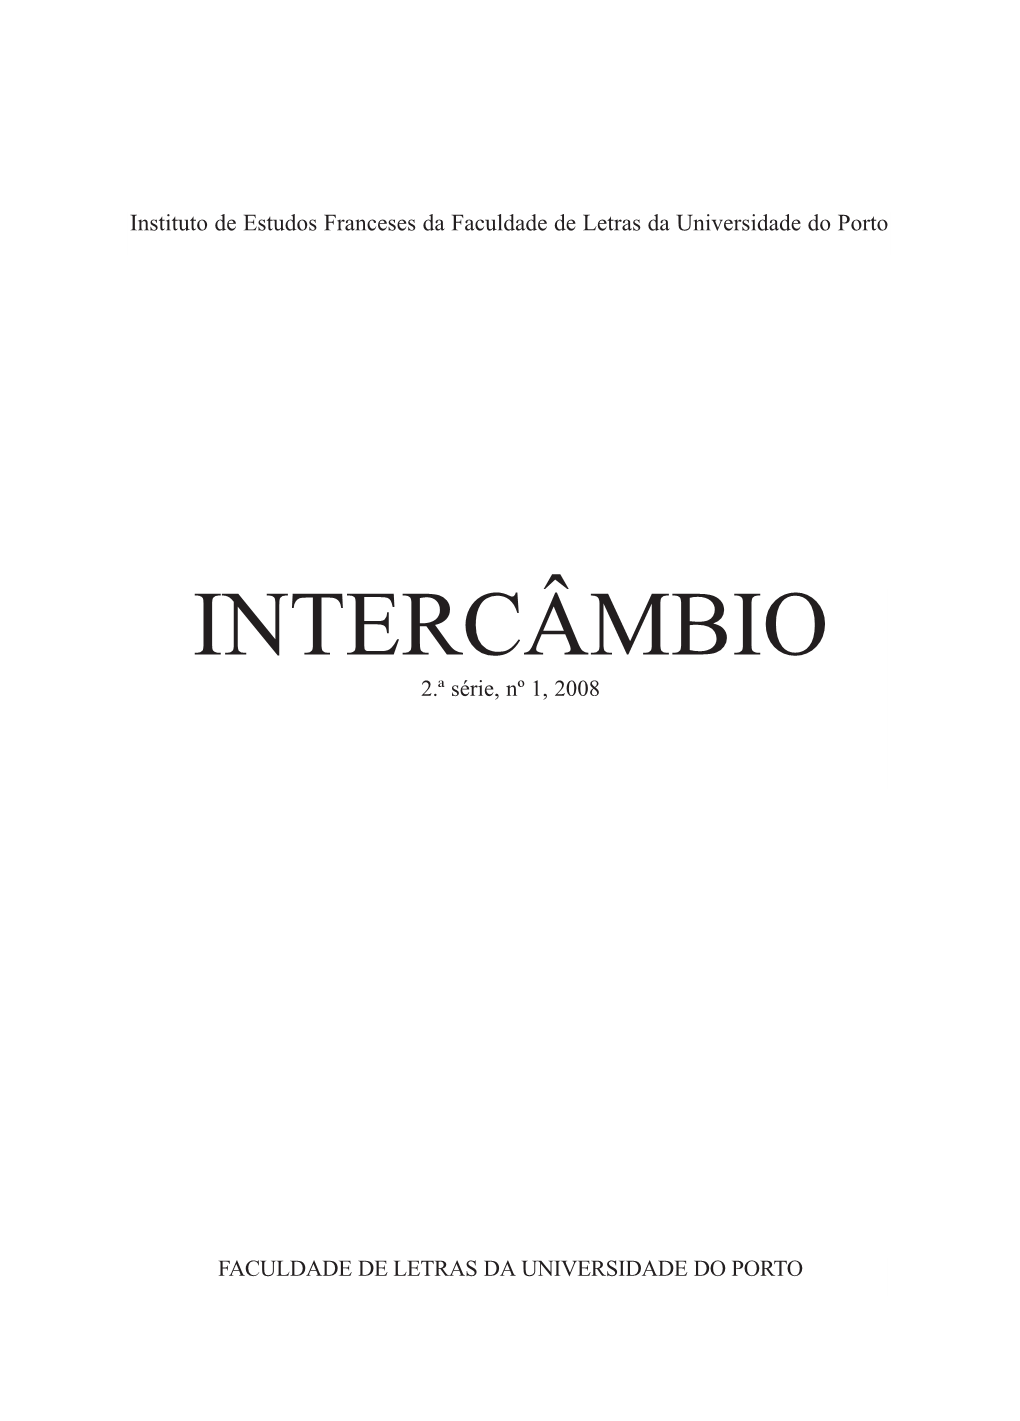 INTERCÂMBIO 2.ª Série, Nº 1, 2008